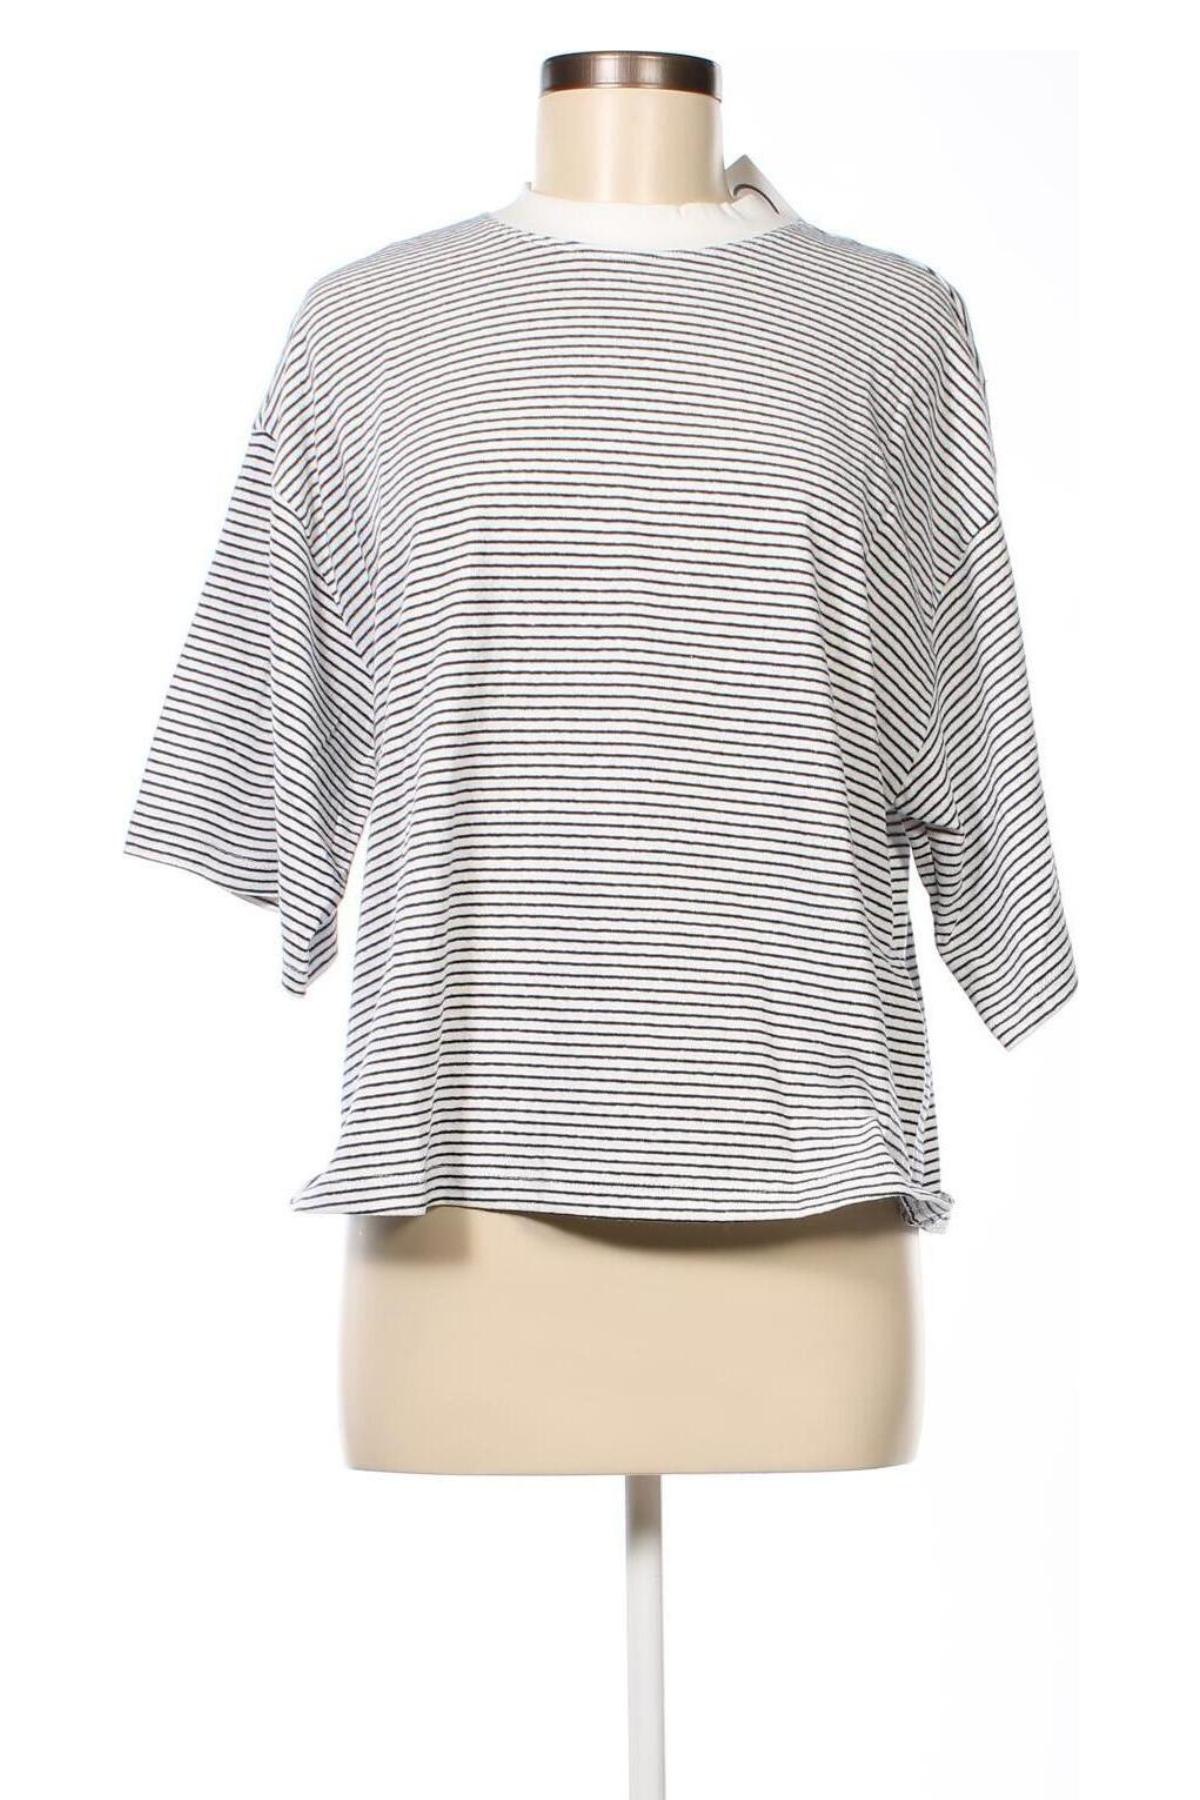 Γυναικεία μπλούζα ASOS, Μέγεθος S, Χρώμα Πολύχρωμο, 75% βαμβάκι, 25% πολυεστέρας, Τιμή 36,00 €